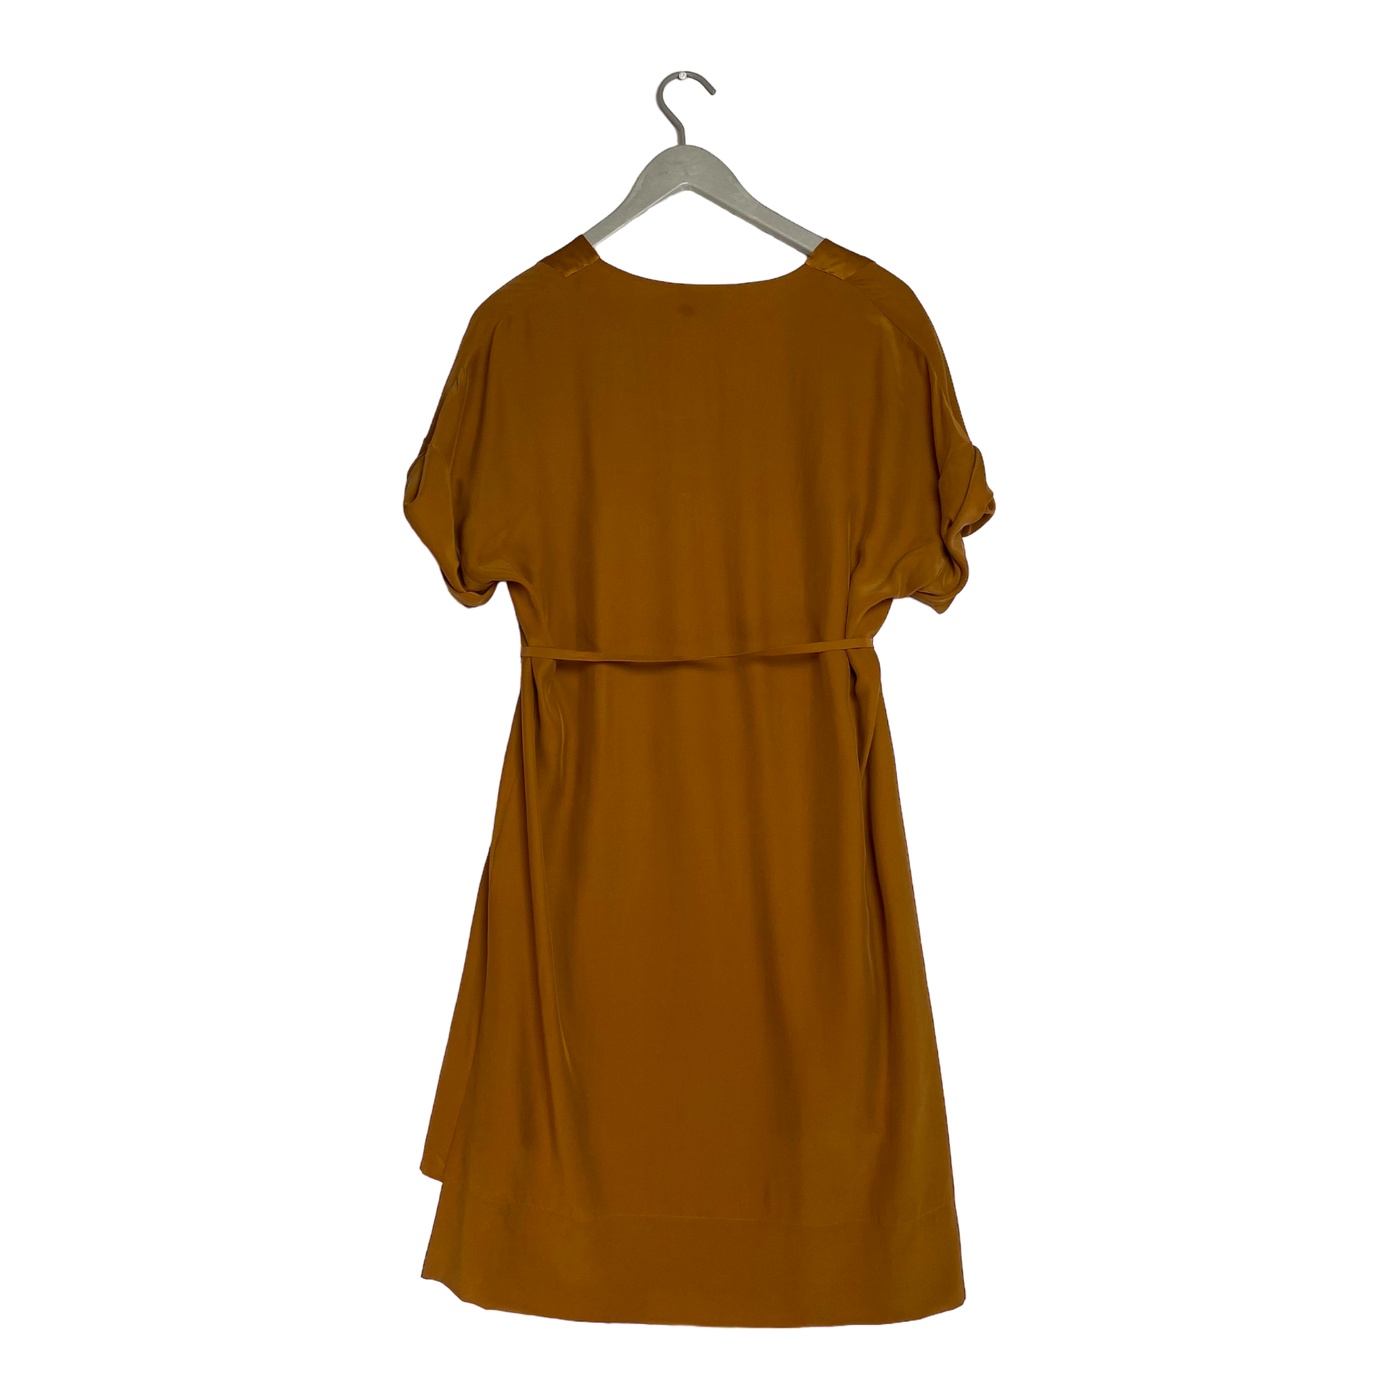 Studio Heijne day dress, cognac | woman S